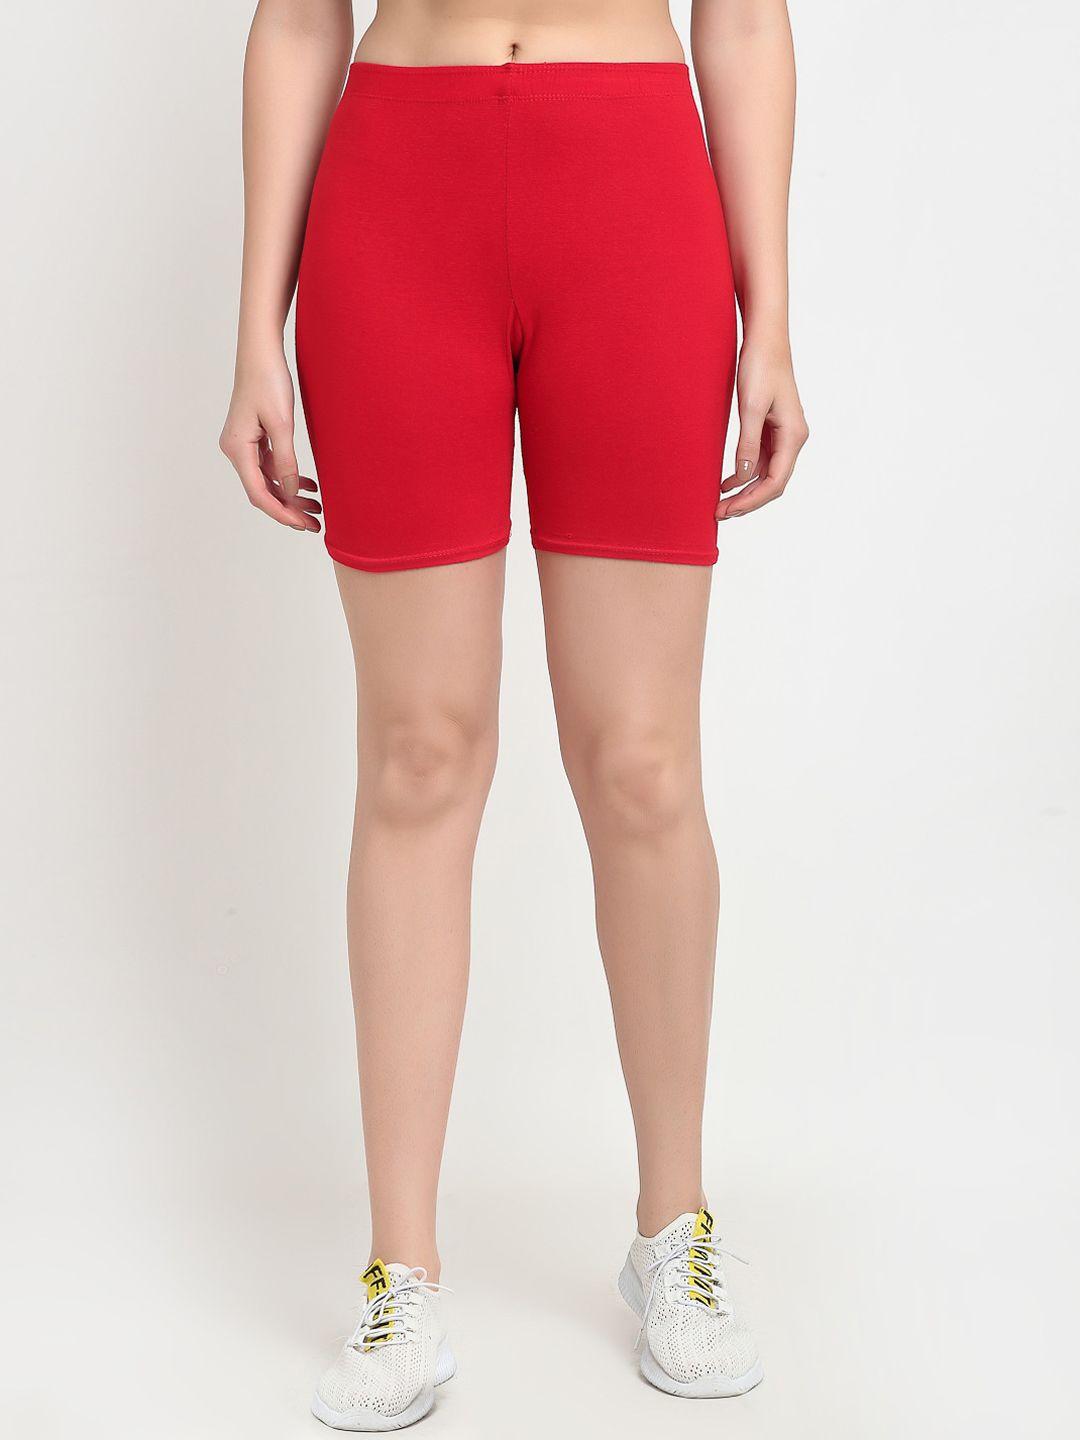 jinfo women red cycling sports shorts